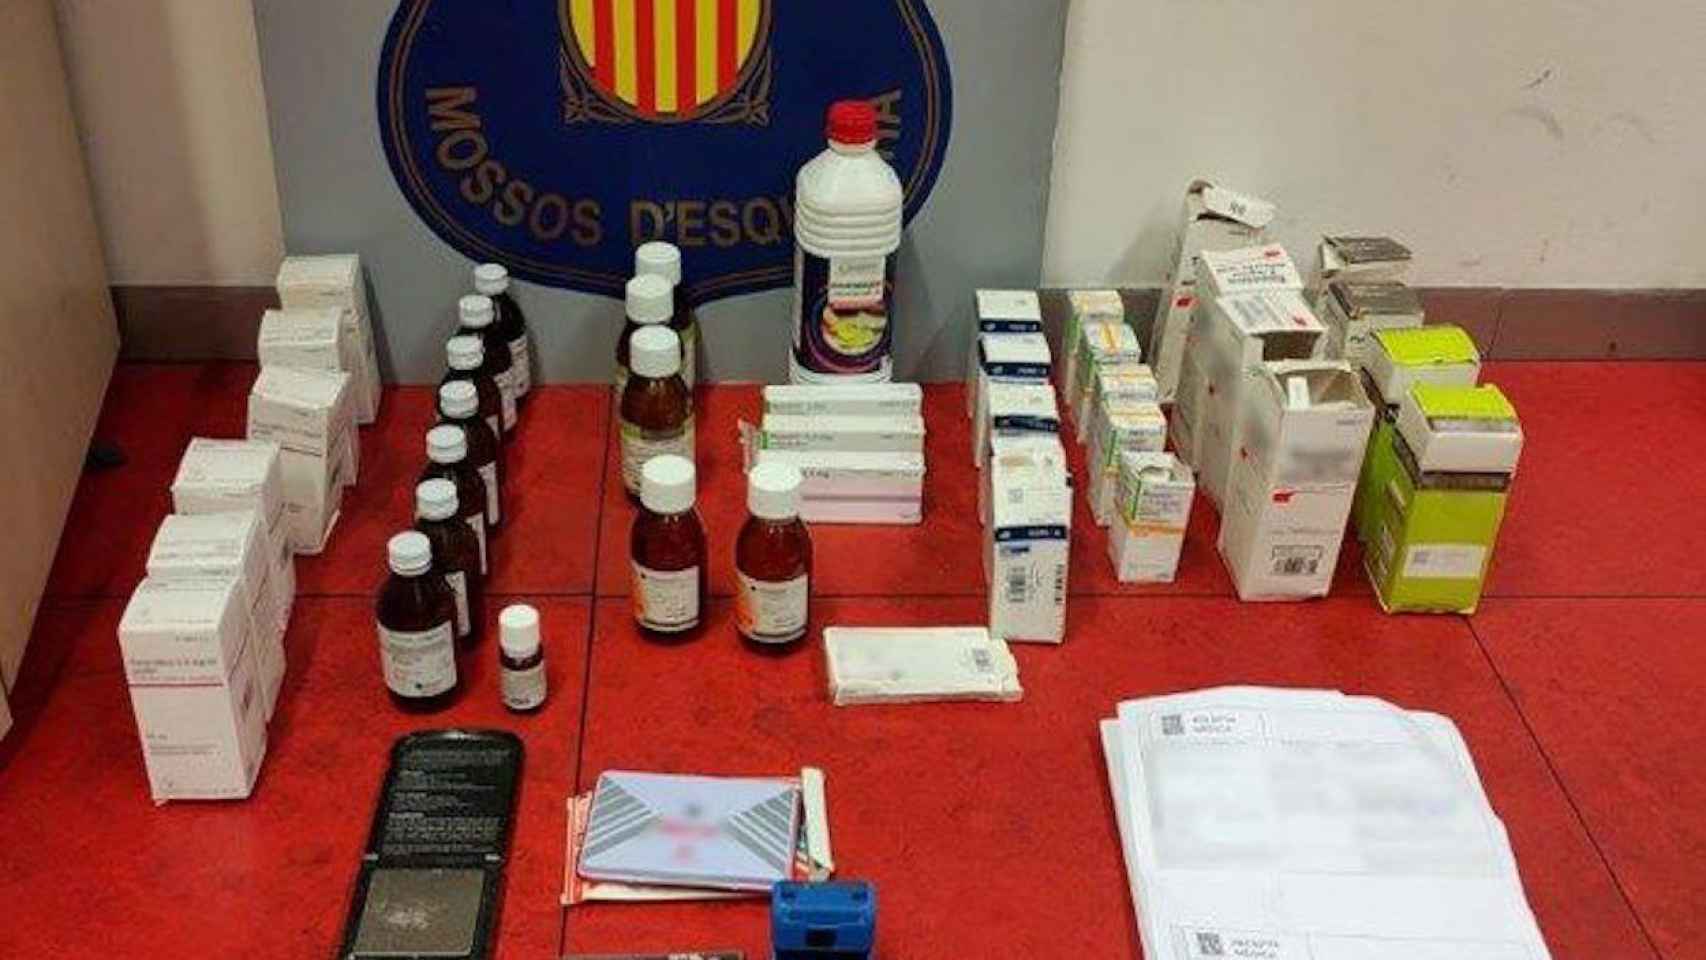 Arsenal de medicamentos decomisado por los Mossos: hay un detenido / MOSSOS D'ESQUADRA